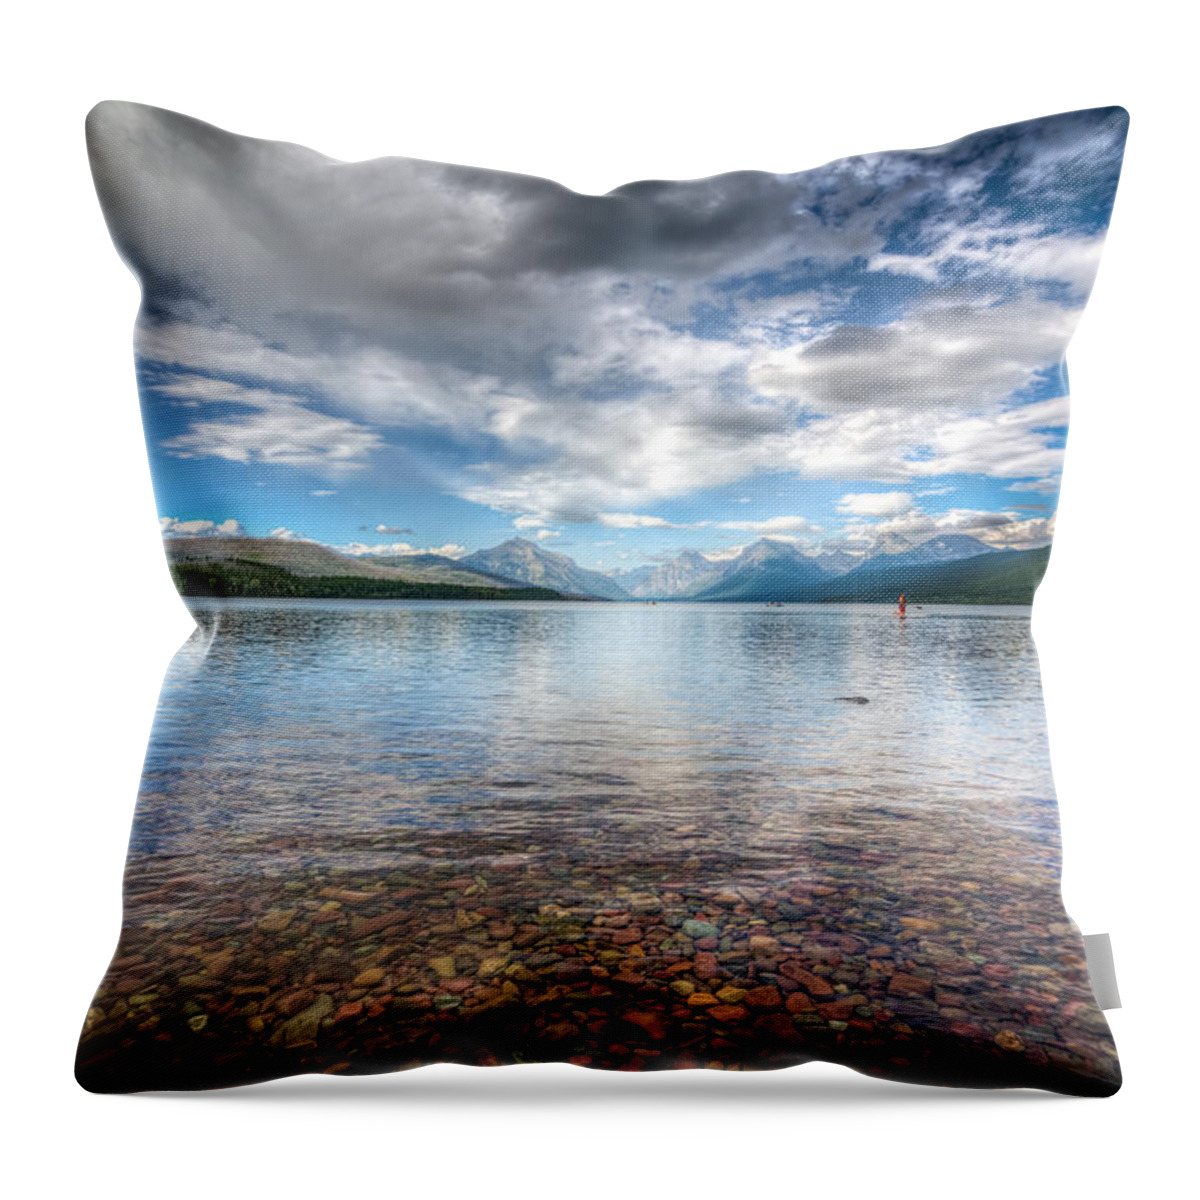 Montana Throw Pillow featuring the photograph Lake McDonald by Spencer McDonald